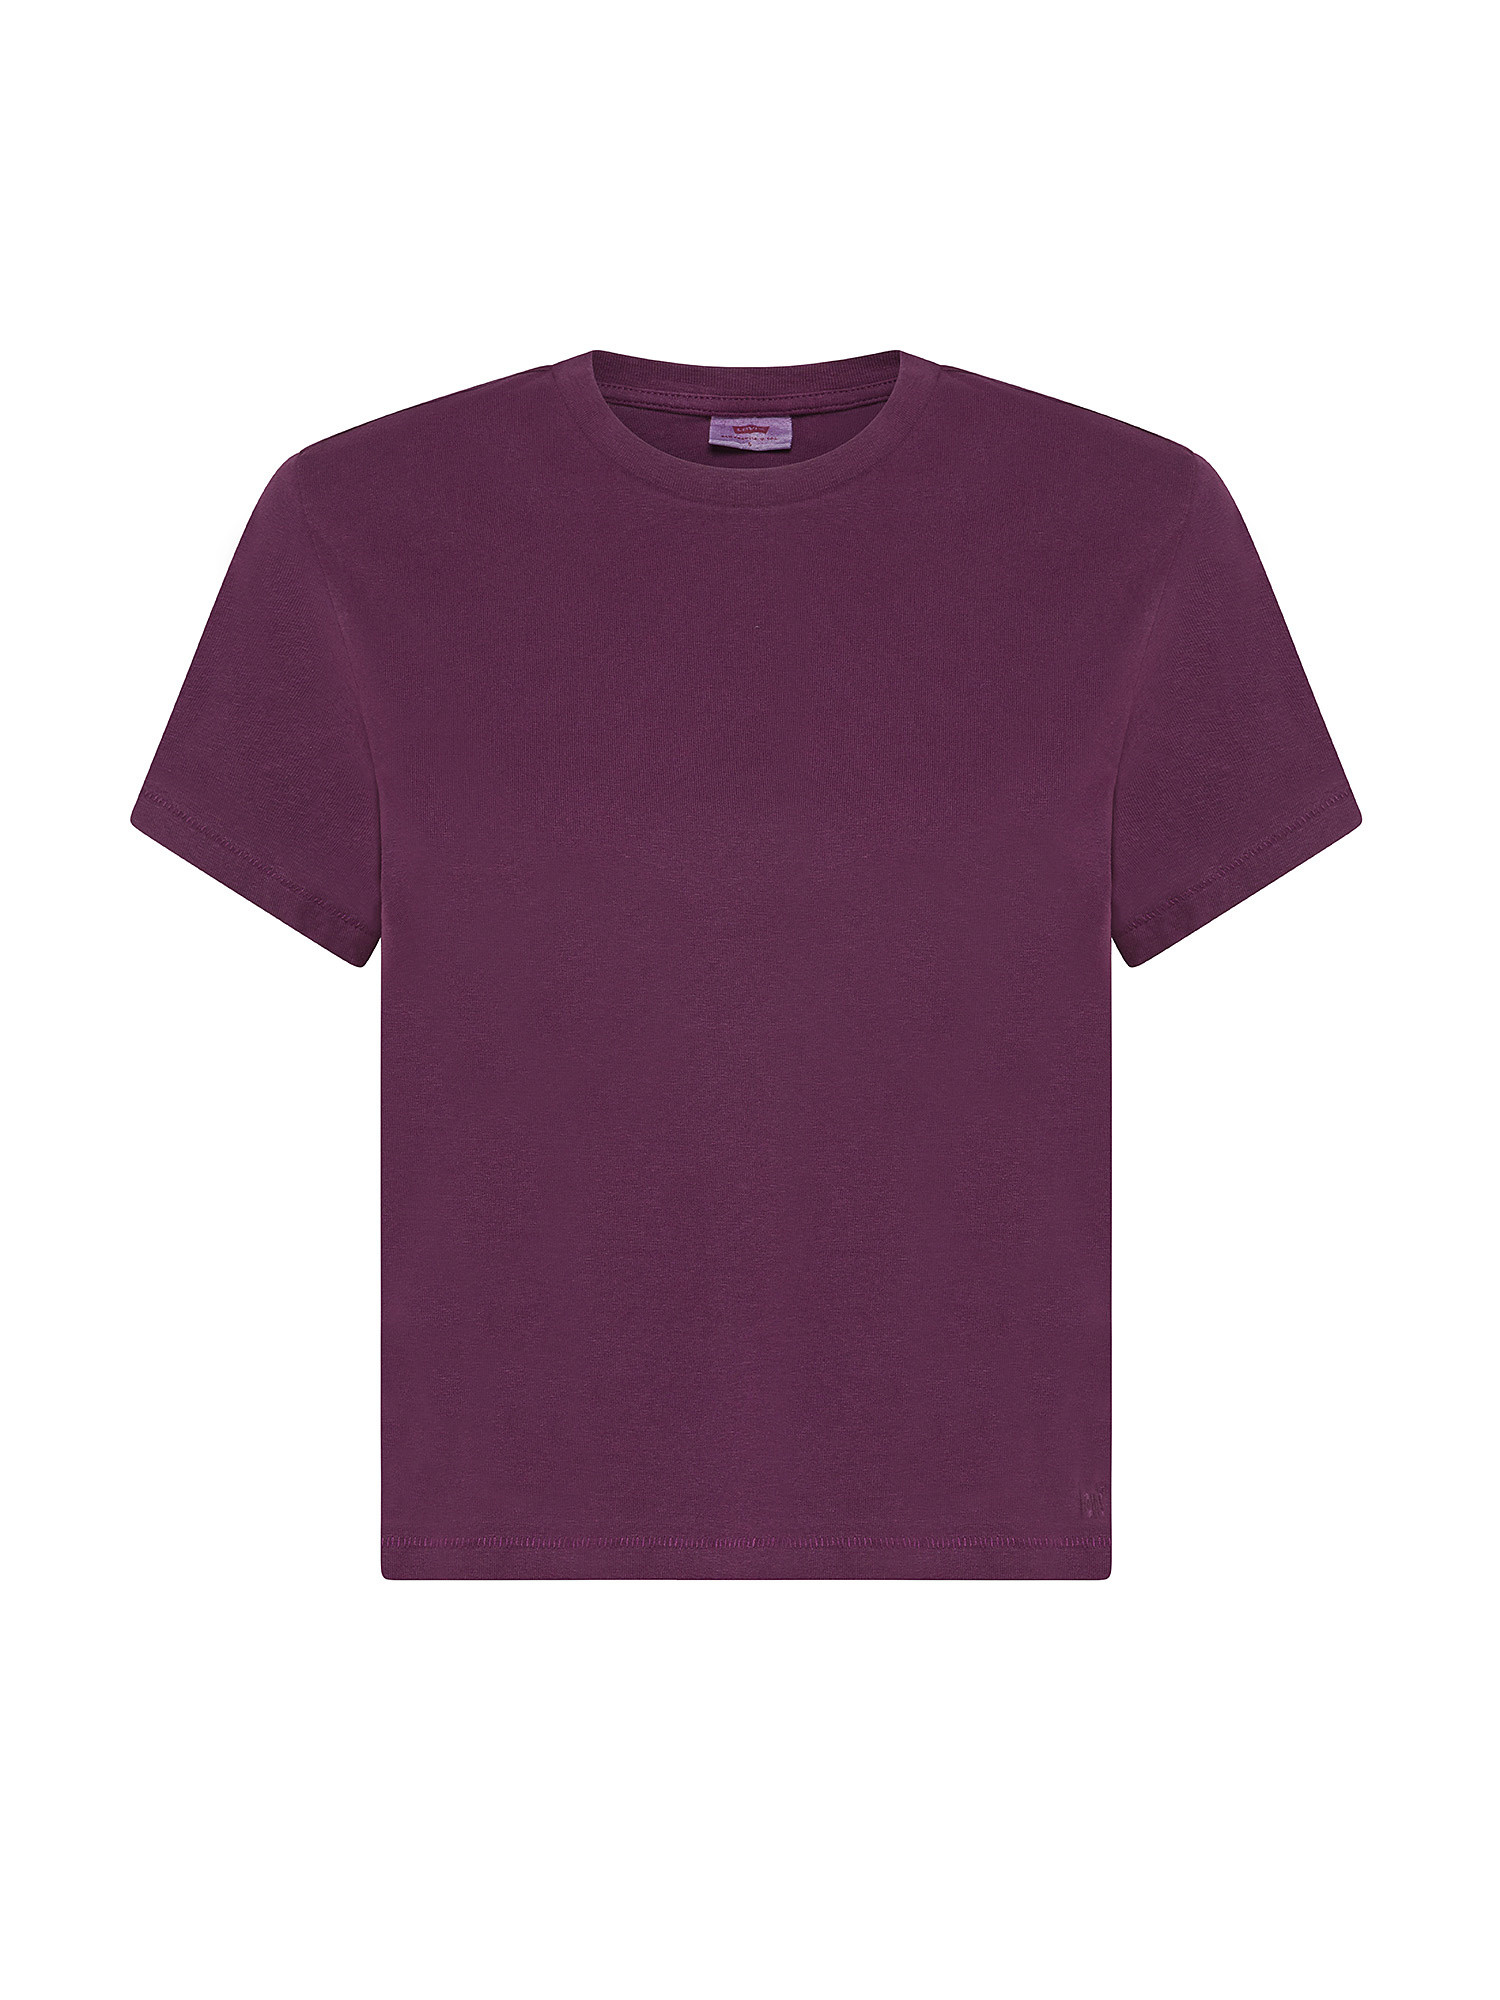 Levi's - Cotton T-shirt, Red Bordeaux, large image number 0